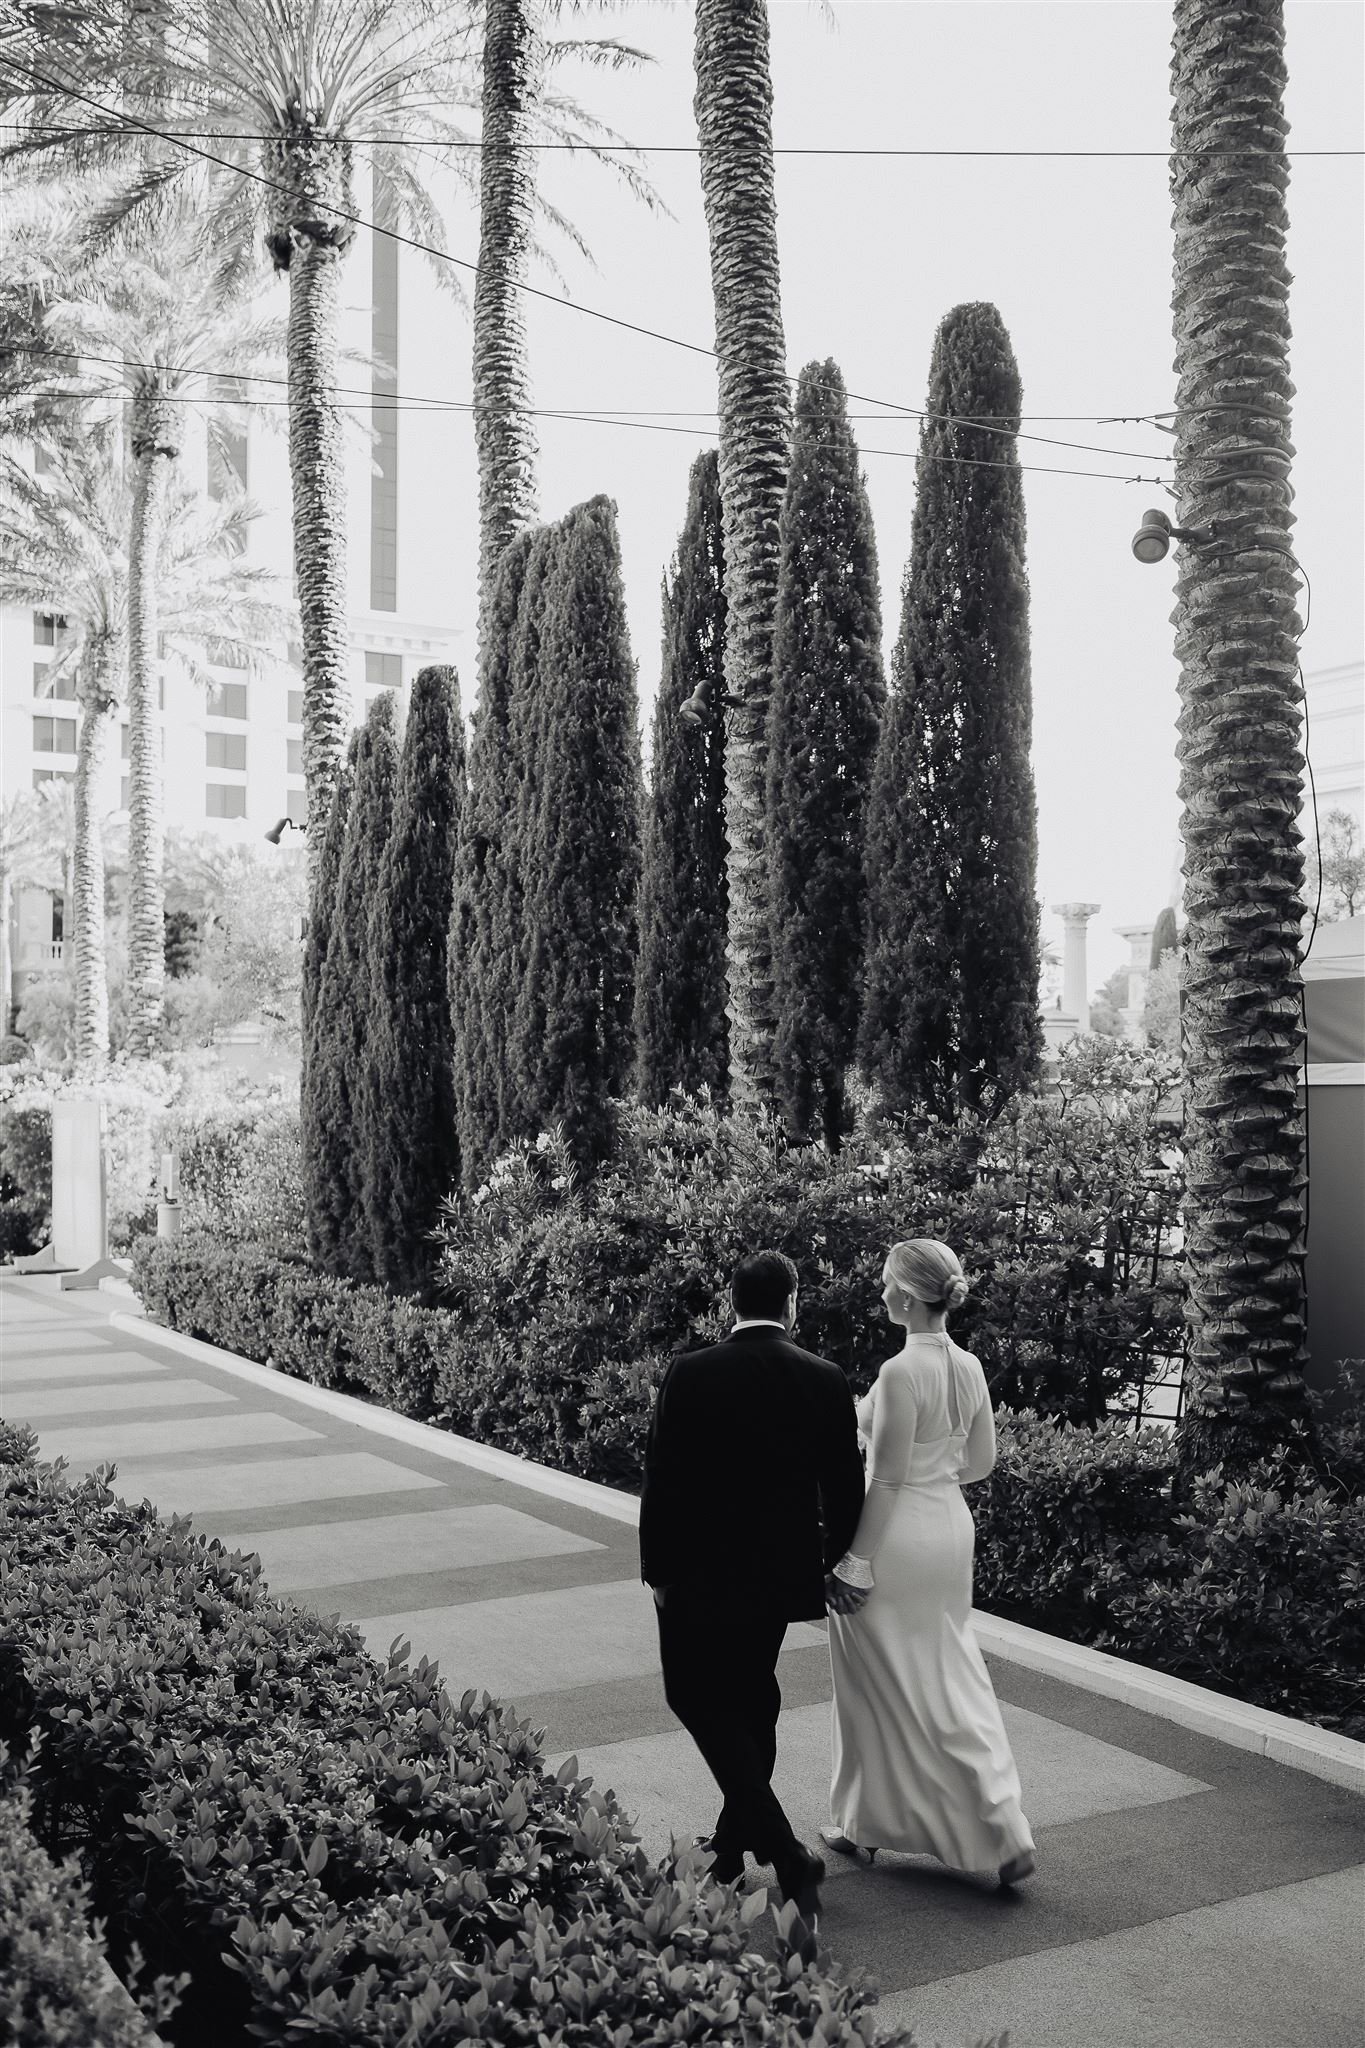 Las Vegas Micro Wedding at Caesar's Palace Gallery (Copy)